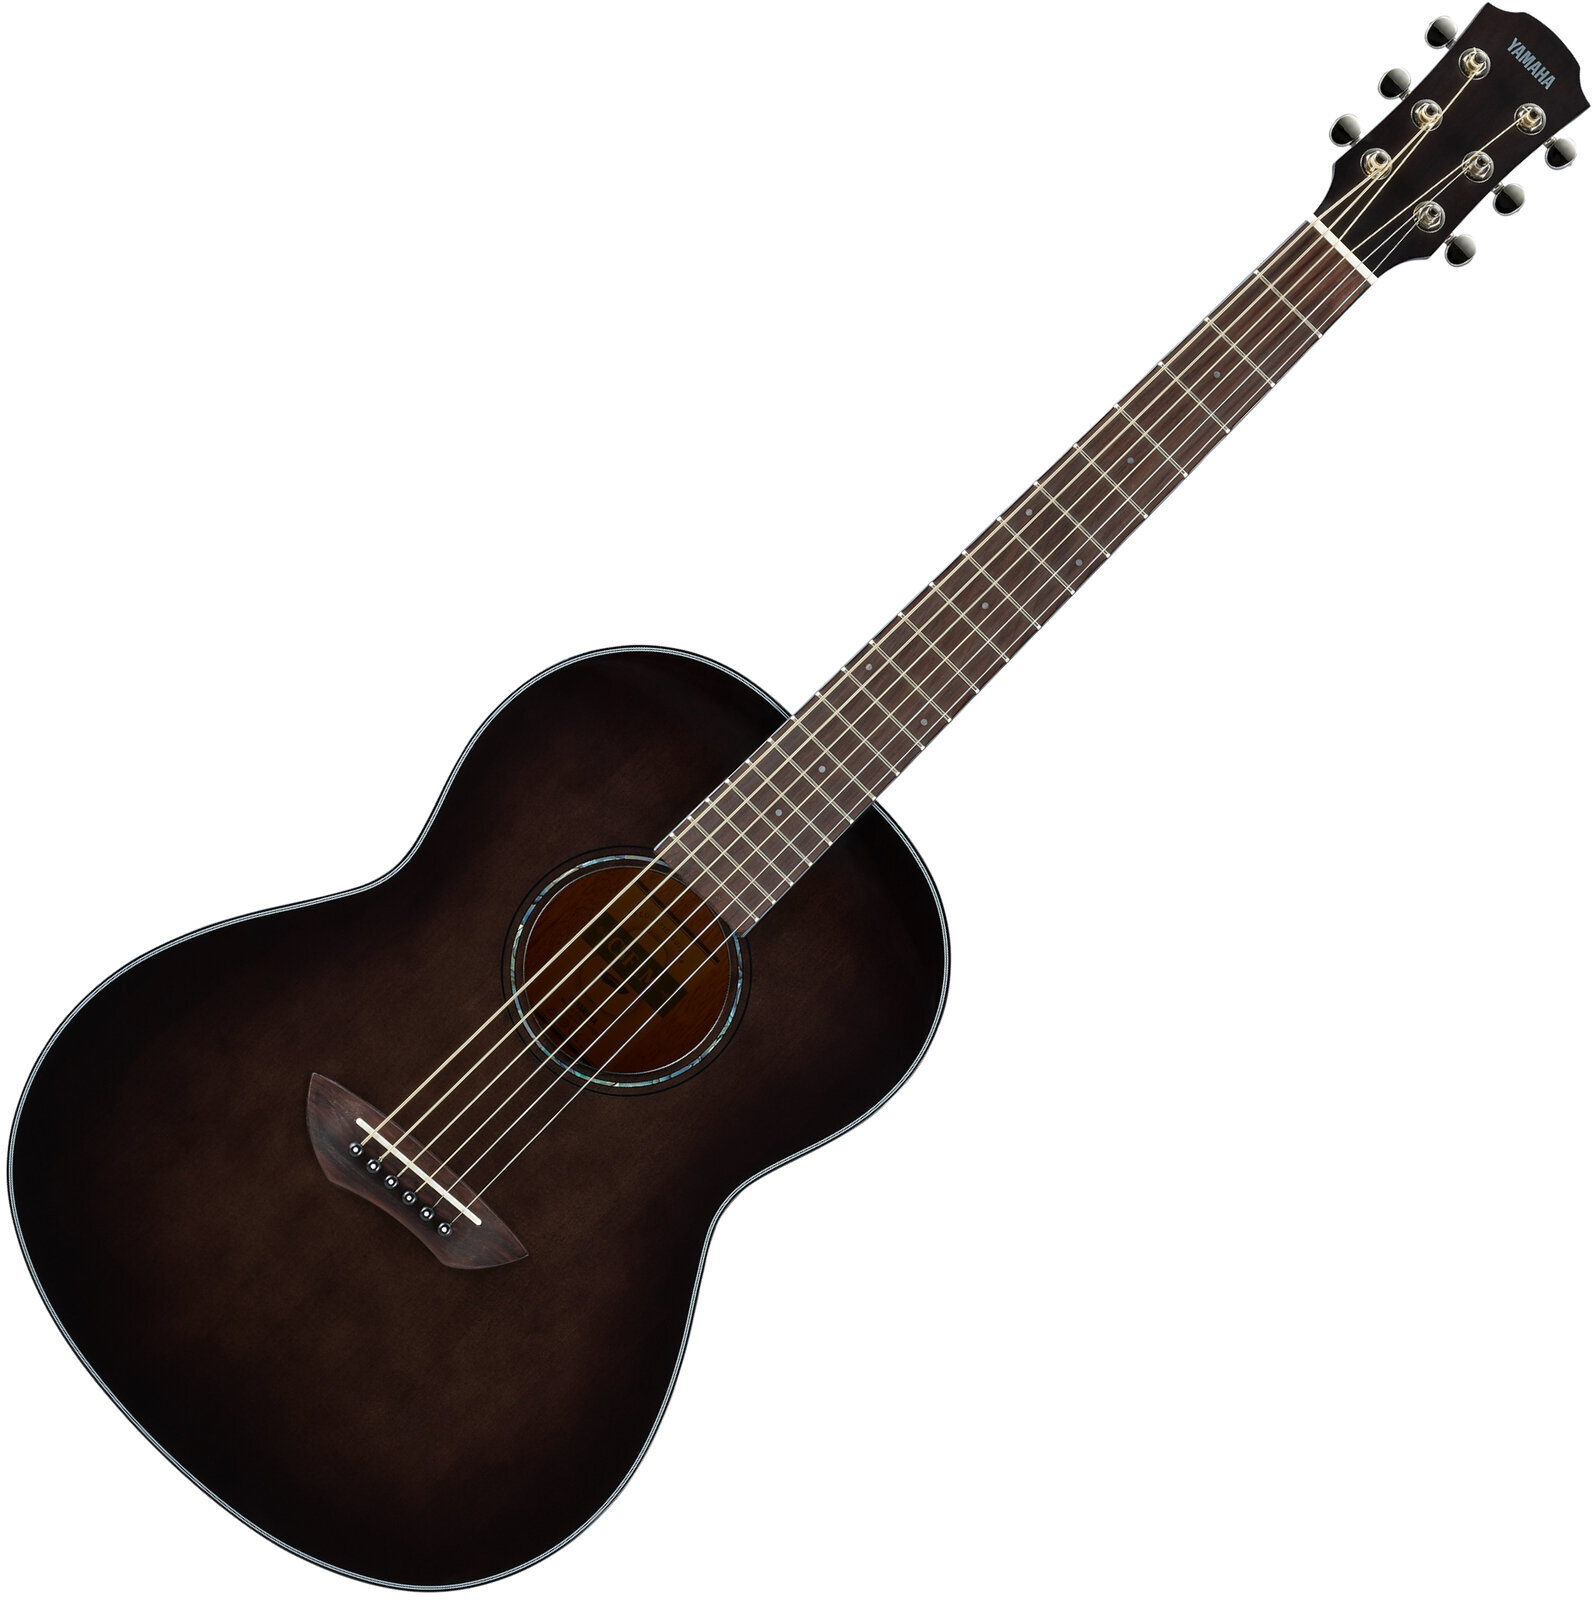 Electro-acoustic guitar Yamaha CSF1M Translucent Black